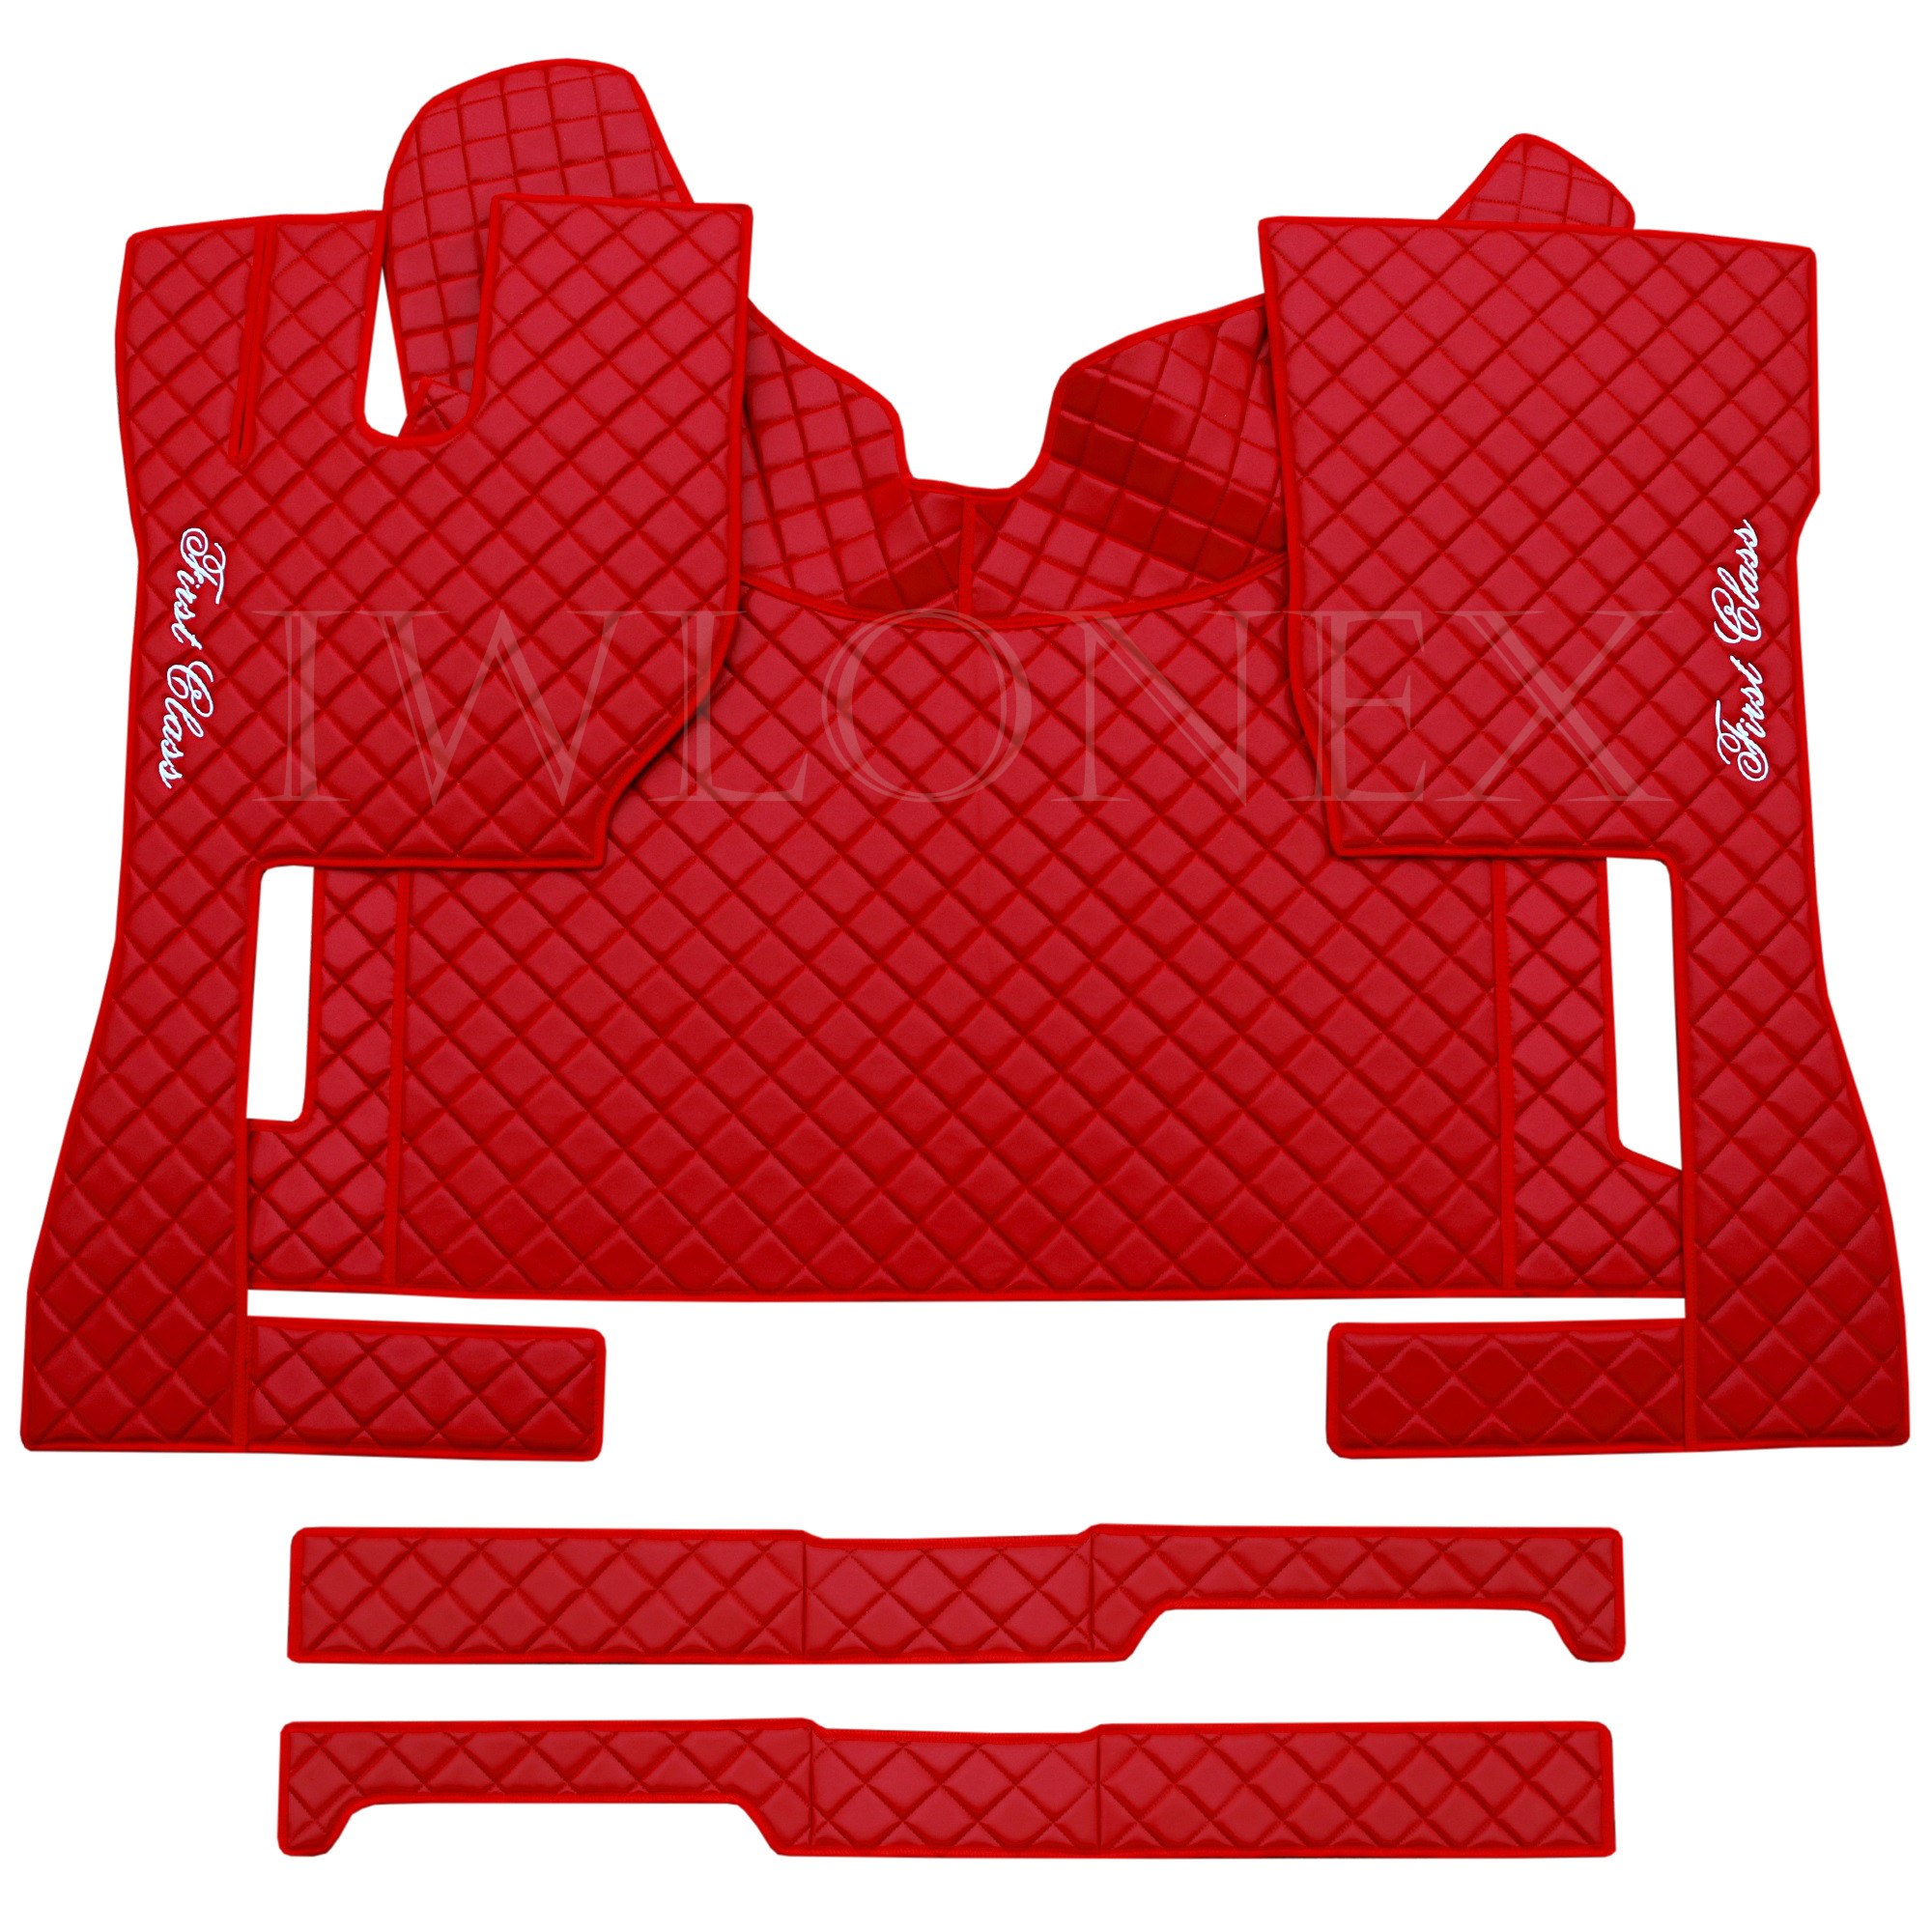 Fußmatten + Sitzsockelverkleidung passend Rot Automatik FH4 VOLVO für Iwlonex 